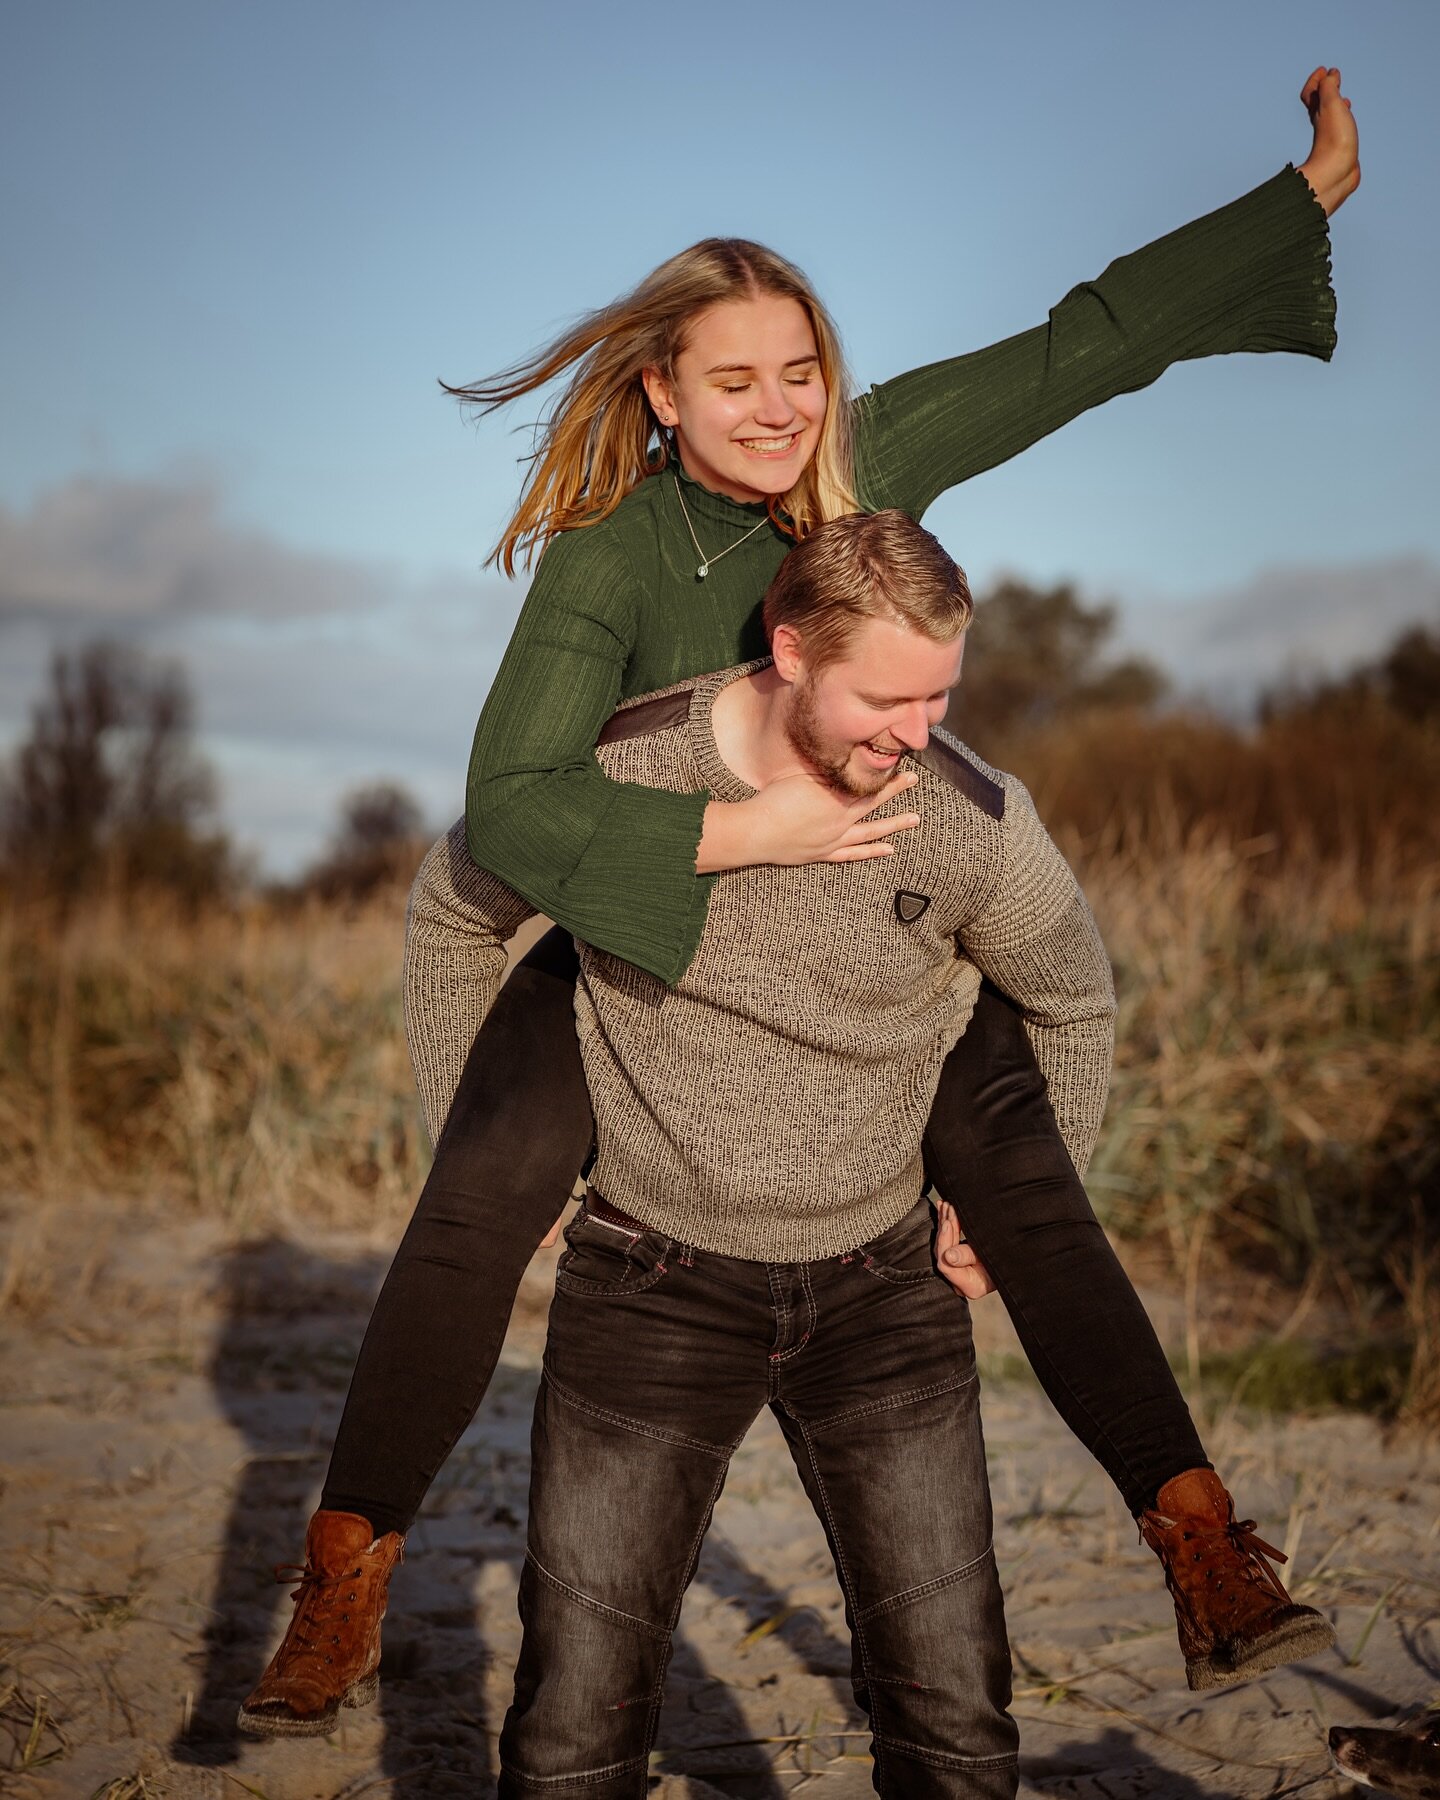 Voller Freude ins neue Jahr ✨ 

Wie verbringt ihr Silvester? Gibt es Traditionen bei euch? Oder habt ihr Vors&auml;tze? 

Schreibt es in die Kommentare 🫶🏻

#neuesjahr #silvester #paarfotos #fotografin #strand #nordsee #portrait #coupleshoot #couple